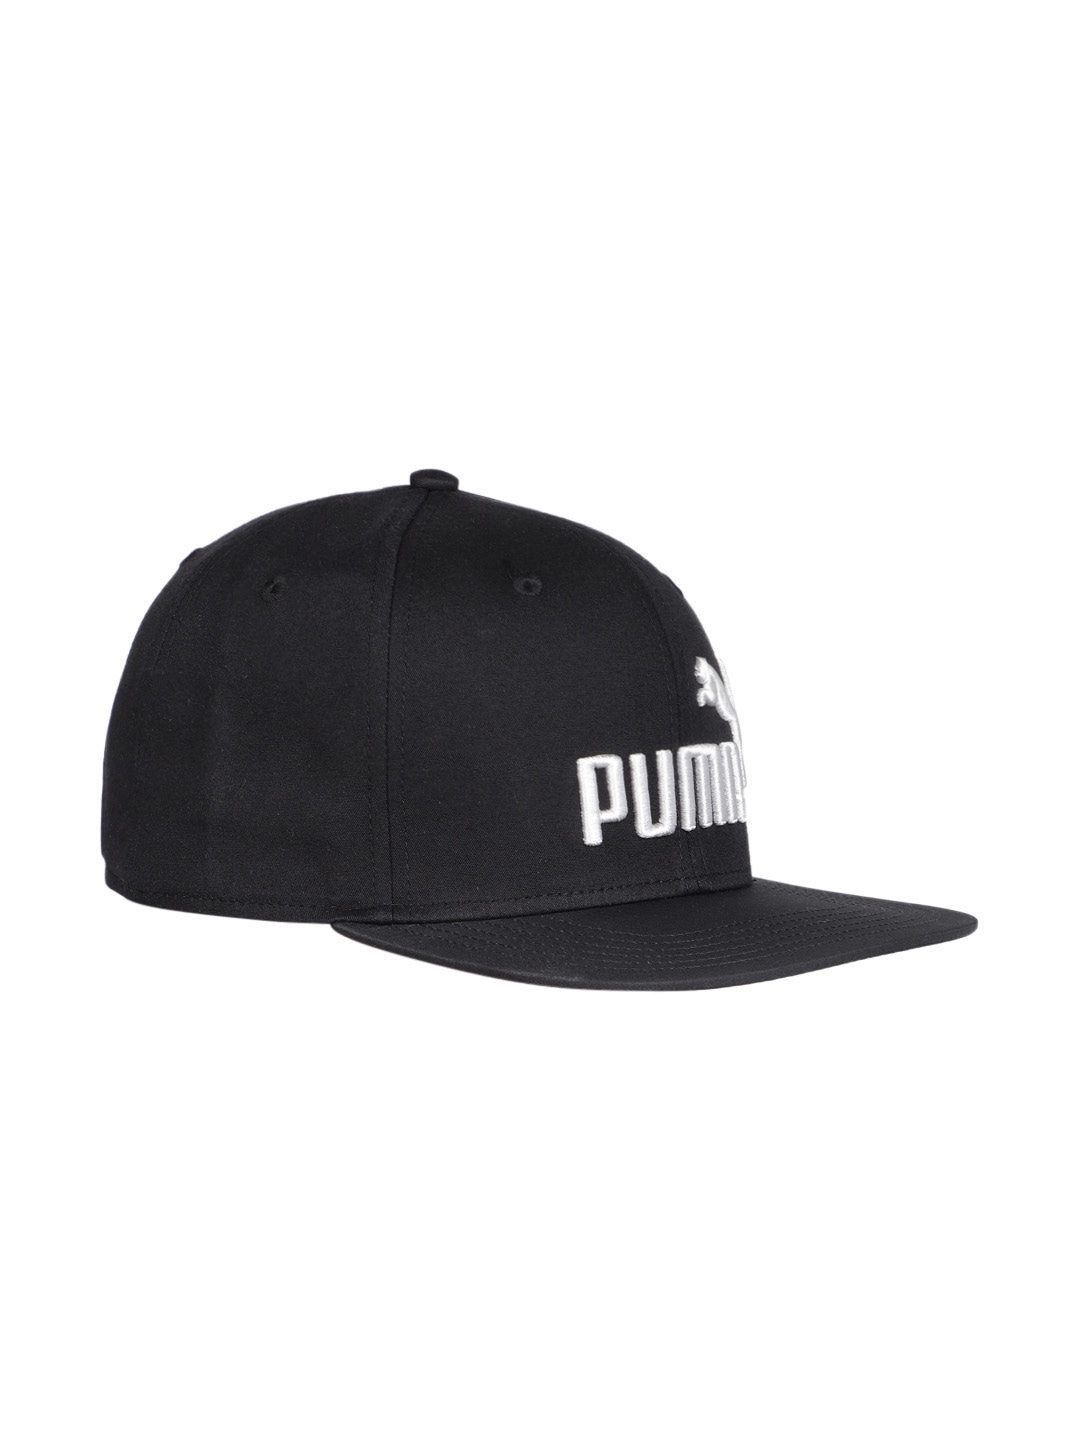 Accessories Caps | Puma Unisex Black Baseball Cap - GO05661